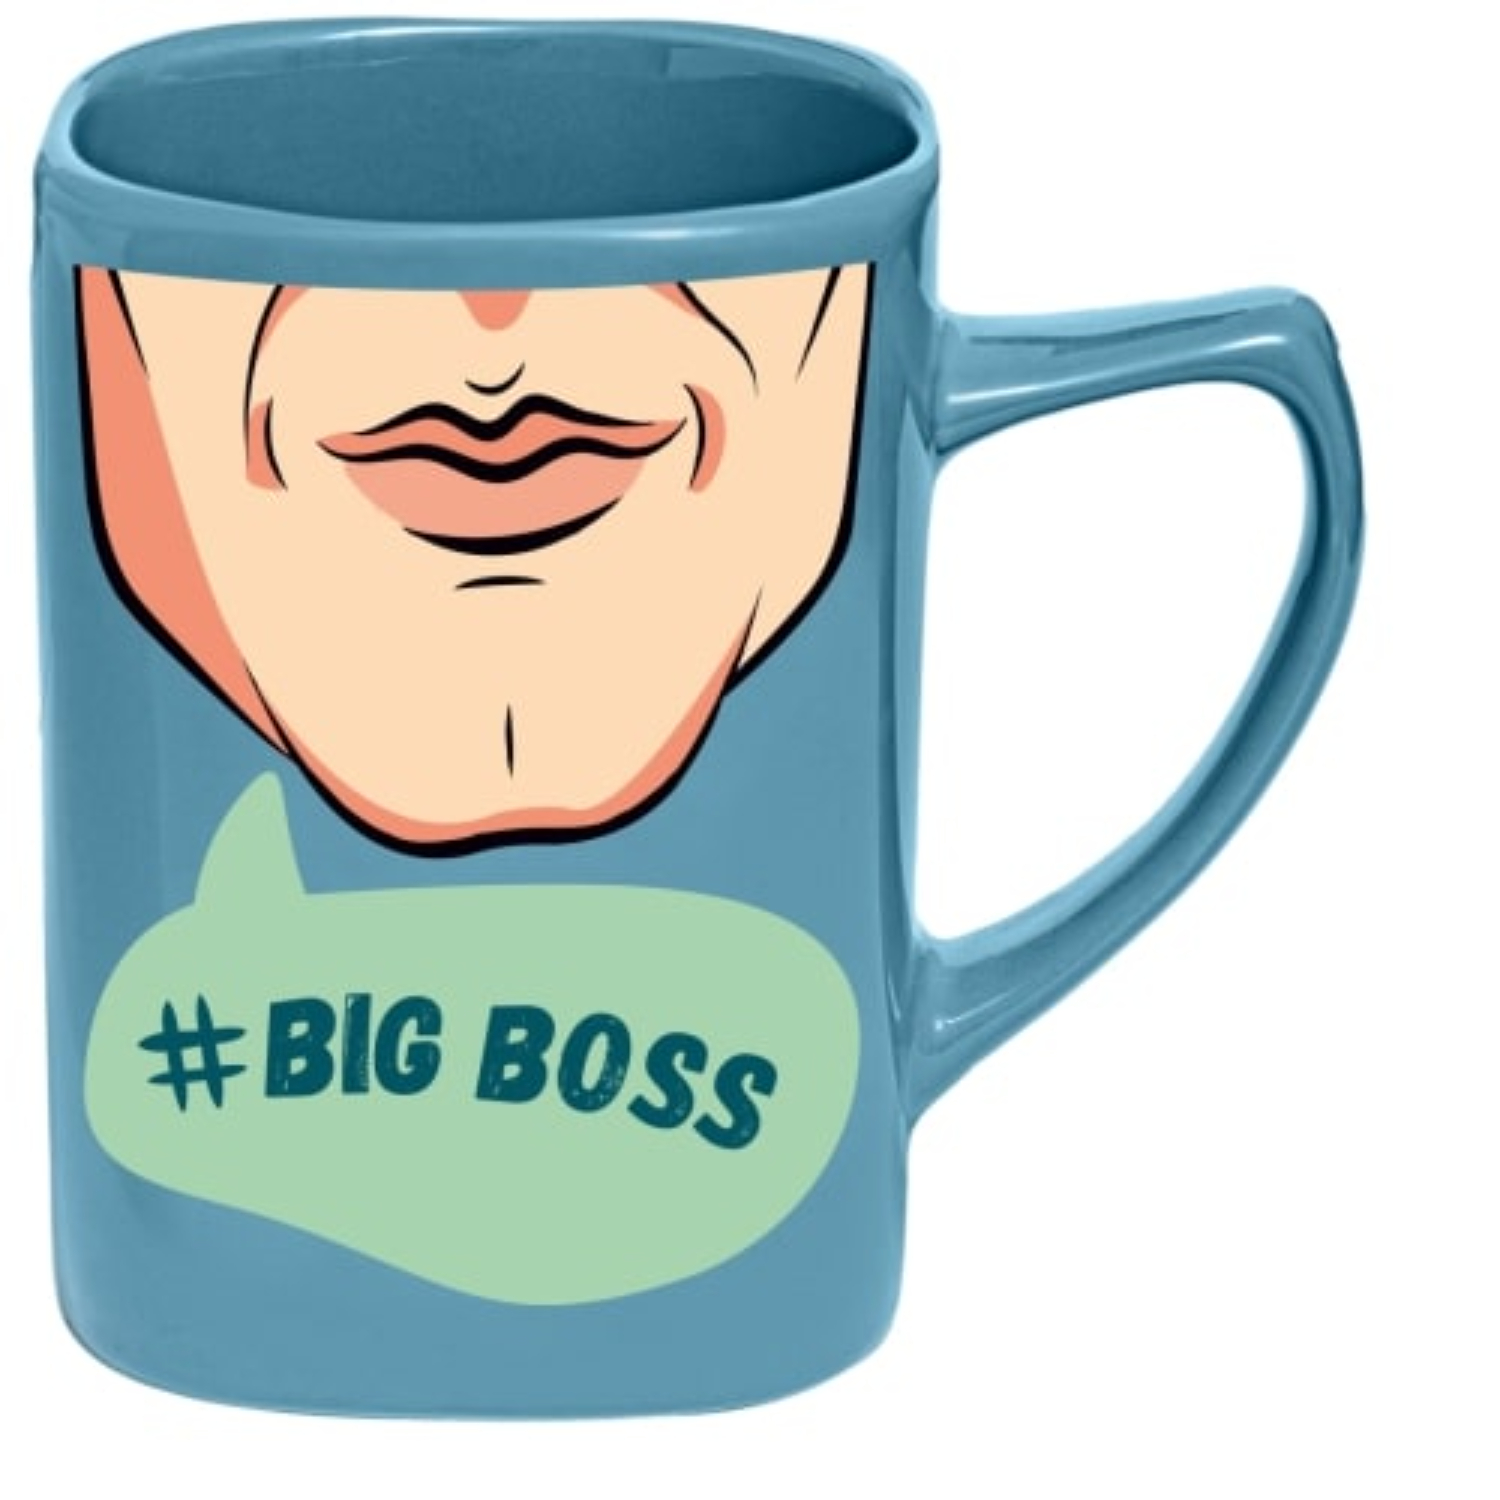 Чашка именная селфи Би-Хэппи Big boss 400 мл чашка именная селфи би хэппи big boss 400 мл